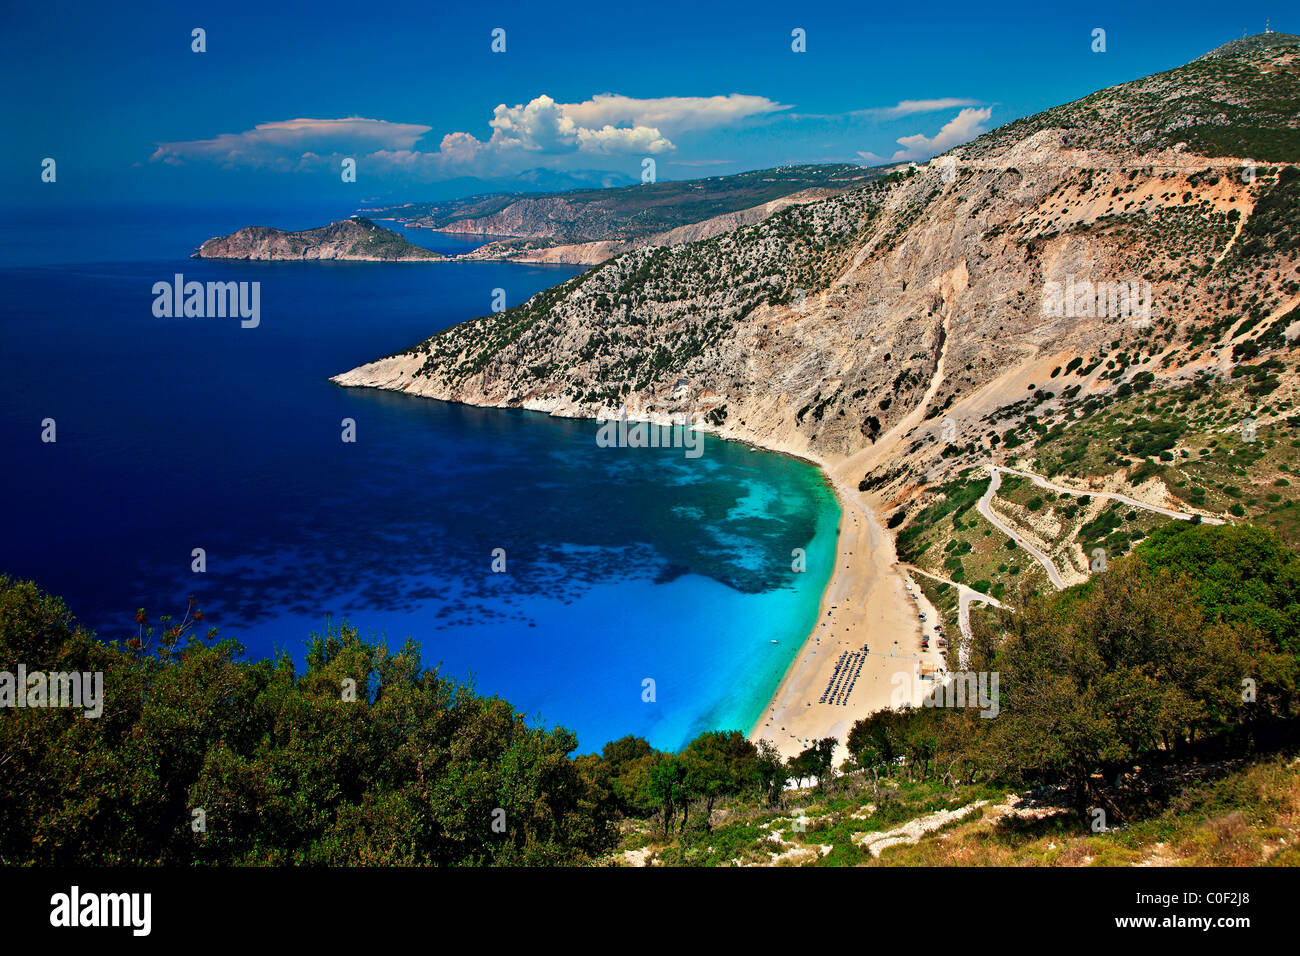 Famosa in tutto il mondo Myrtos Beach sull'isola di Cefalonia. In background in quella piccola penisola si possono vedere Assos village. La Grecia Foto Stock